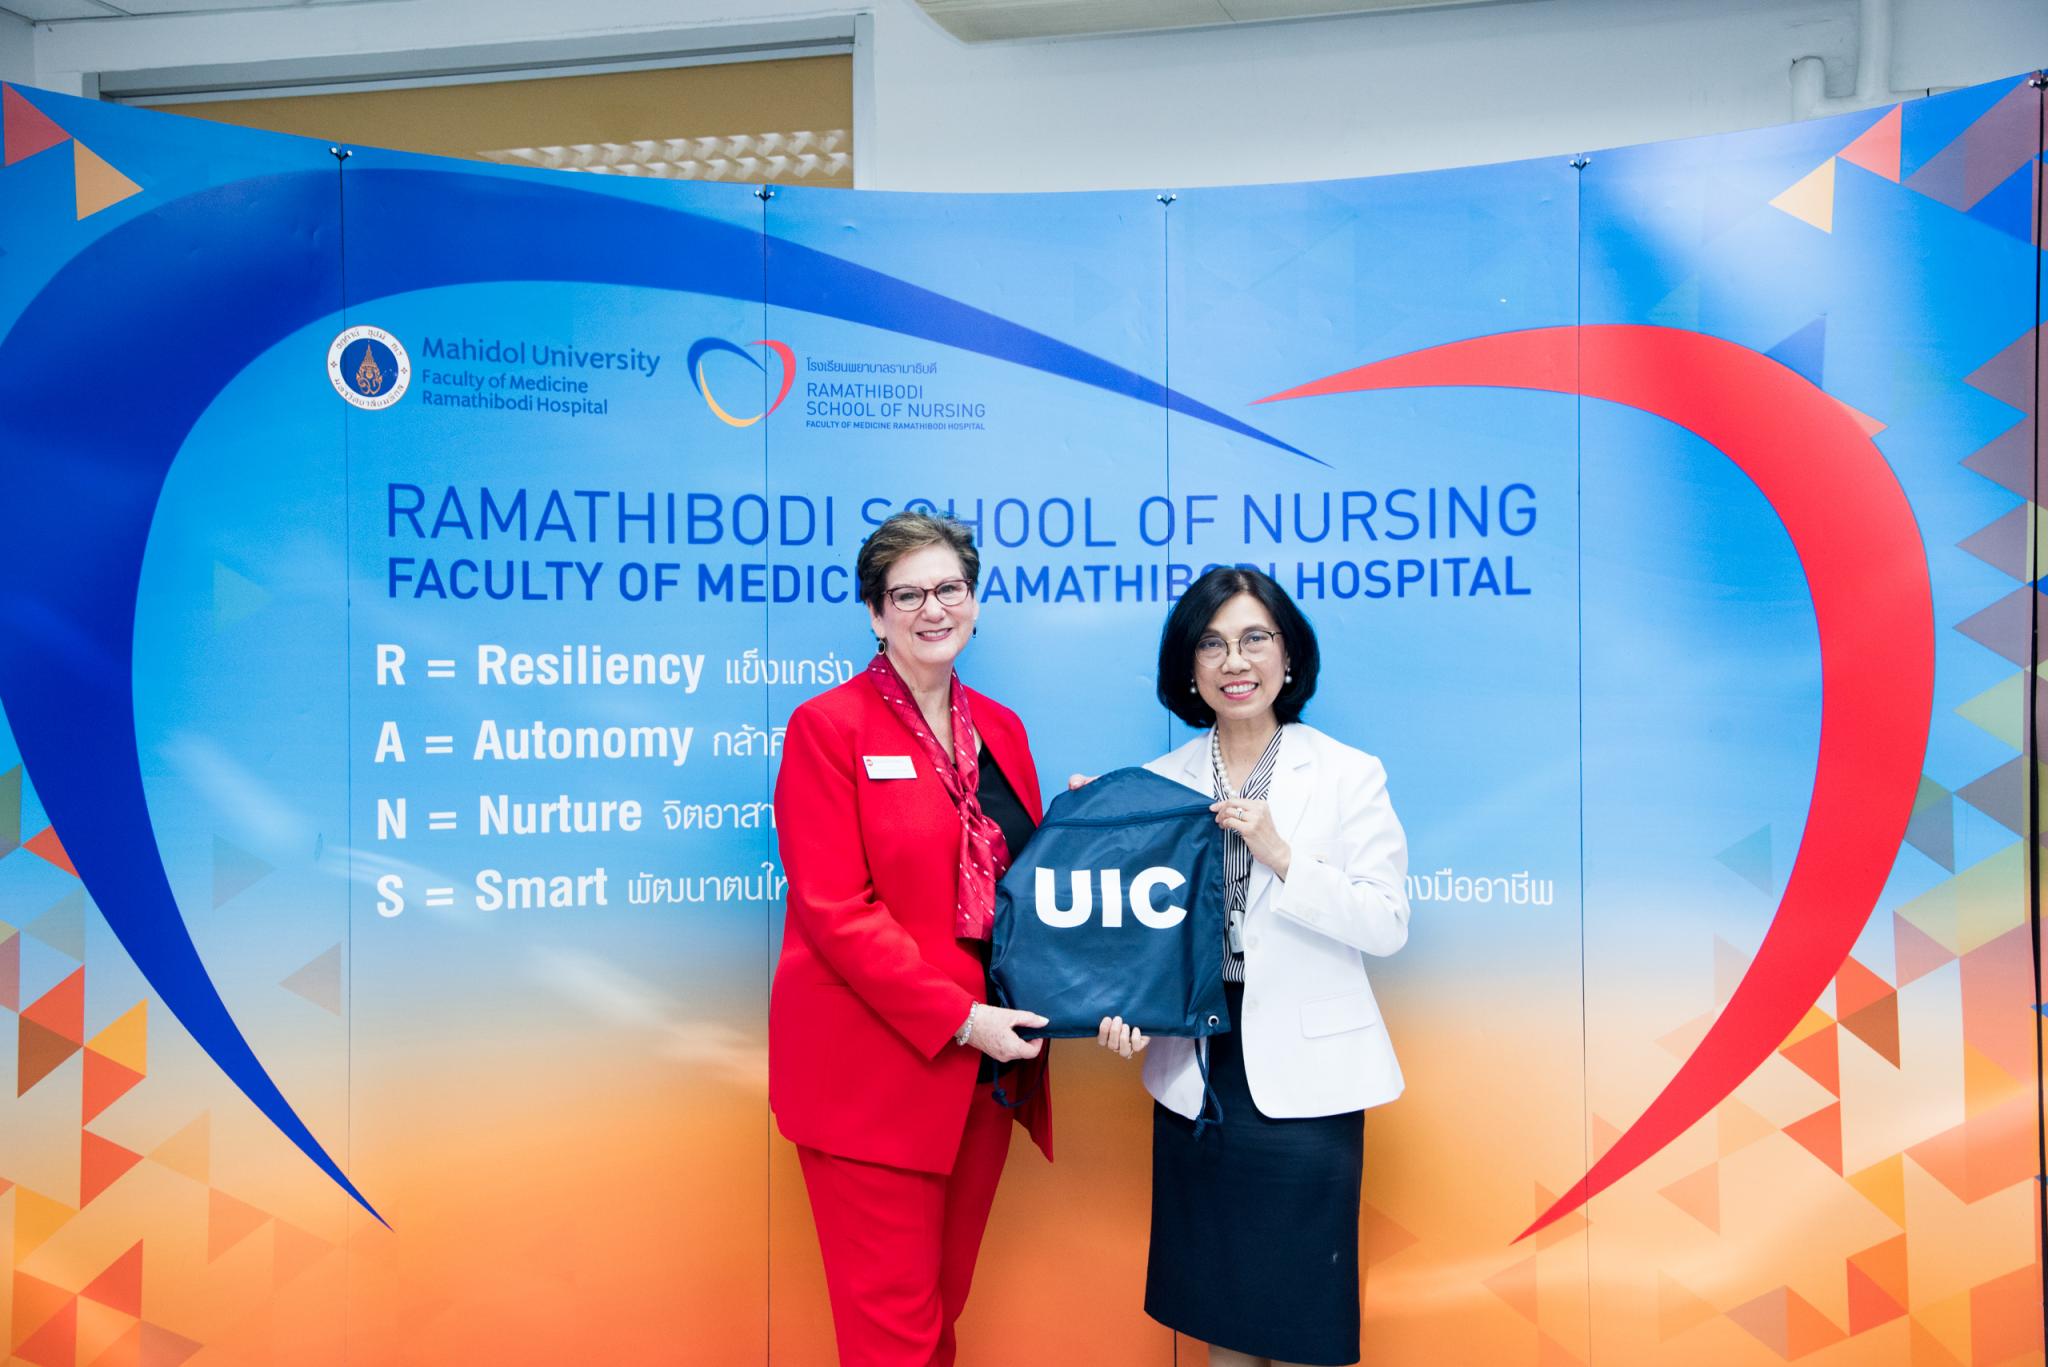 โรงเรียนพยาบาลรามาธิบดี แถลงข่าว Ramathibodi School of Nursing, Nursing School of the Future